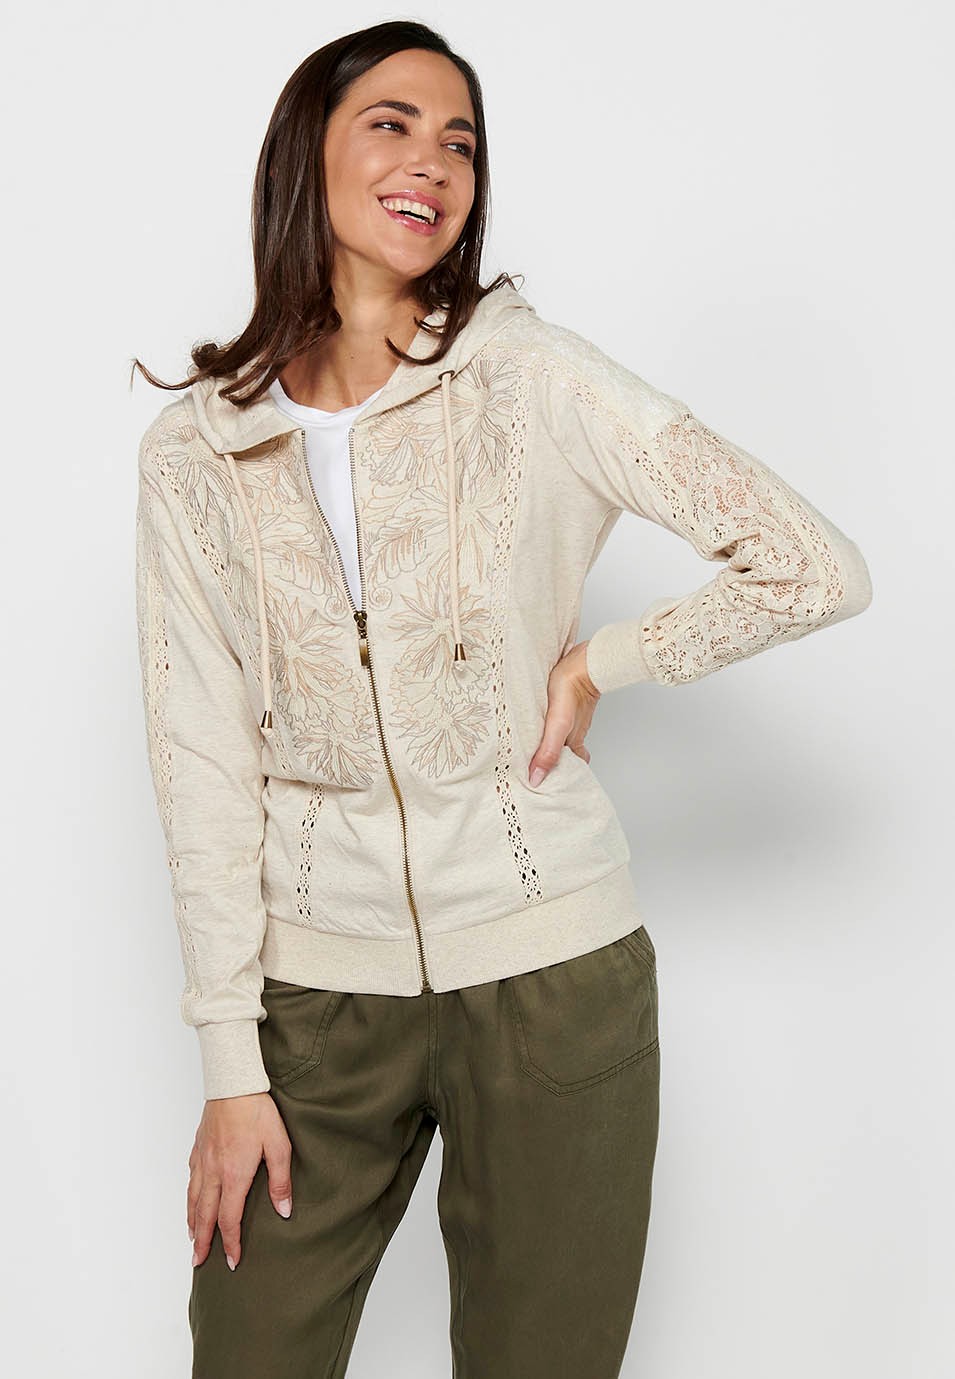 Veste sweat-shirt avec fermeture à glissière sur le devant avec détails en dentelle et col à capuche couleur pierre pour femme